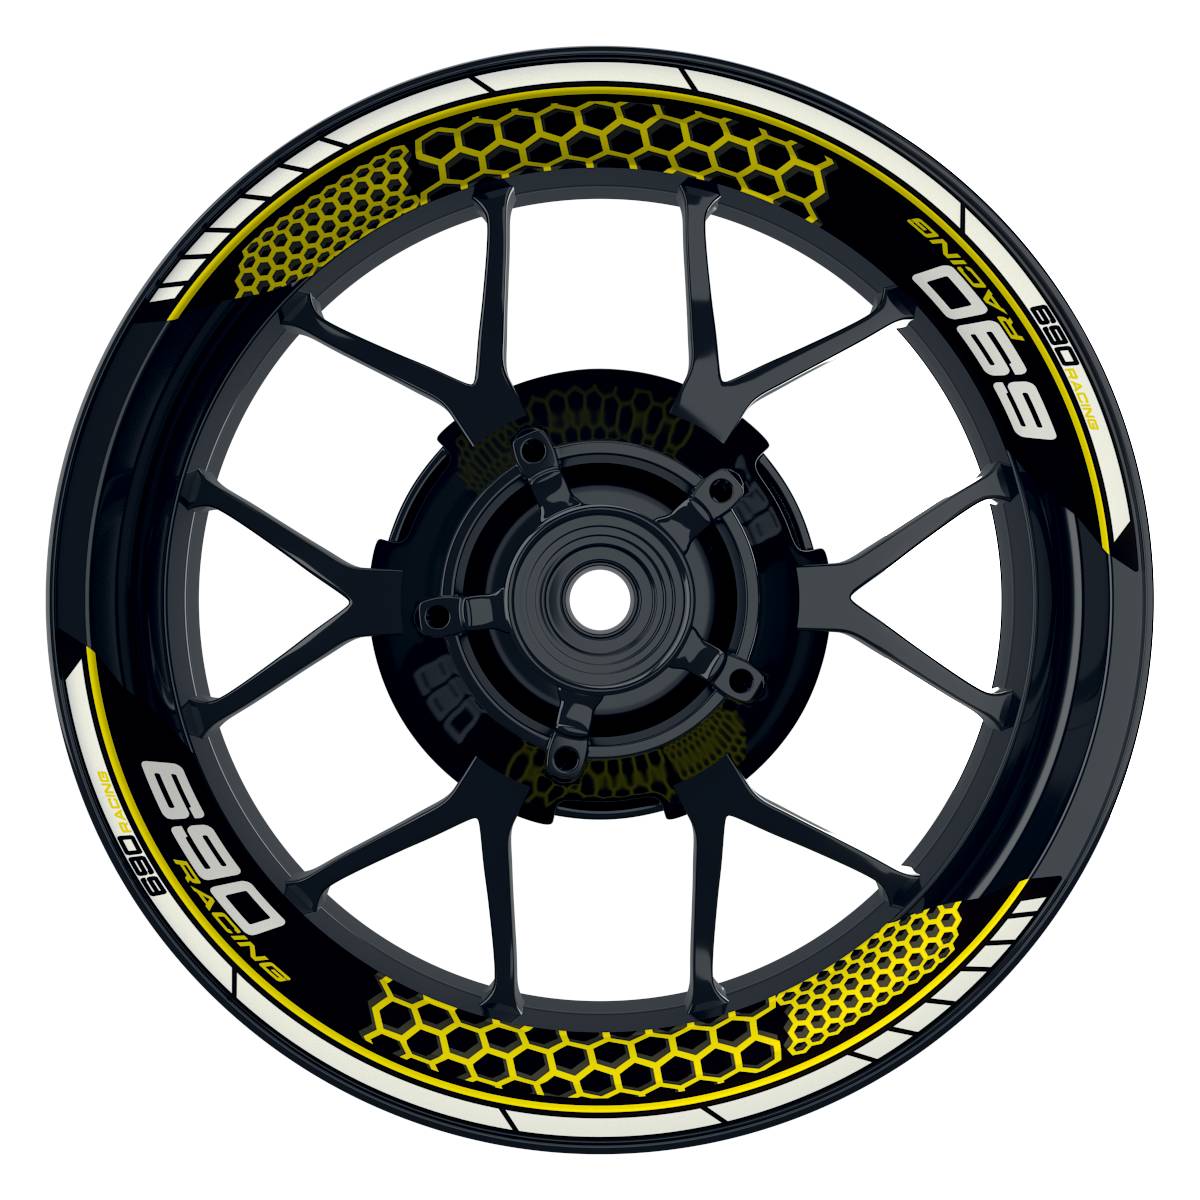 KTM Racing 690 Hexagon schwarz gelb Frontansicht